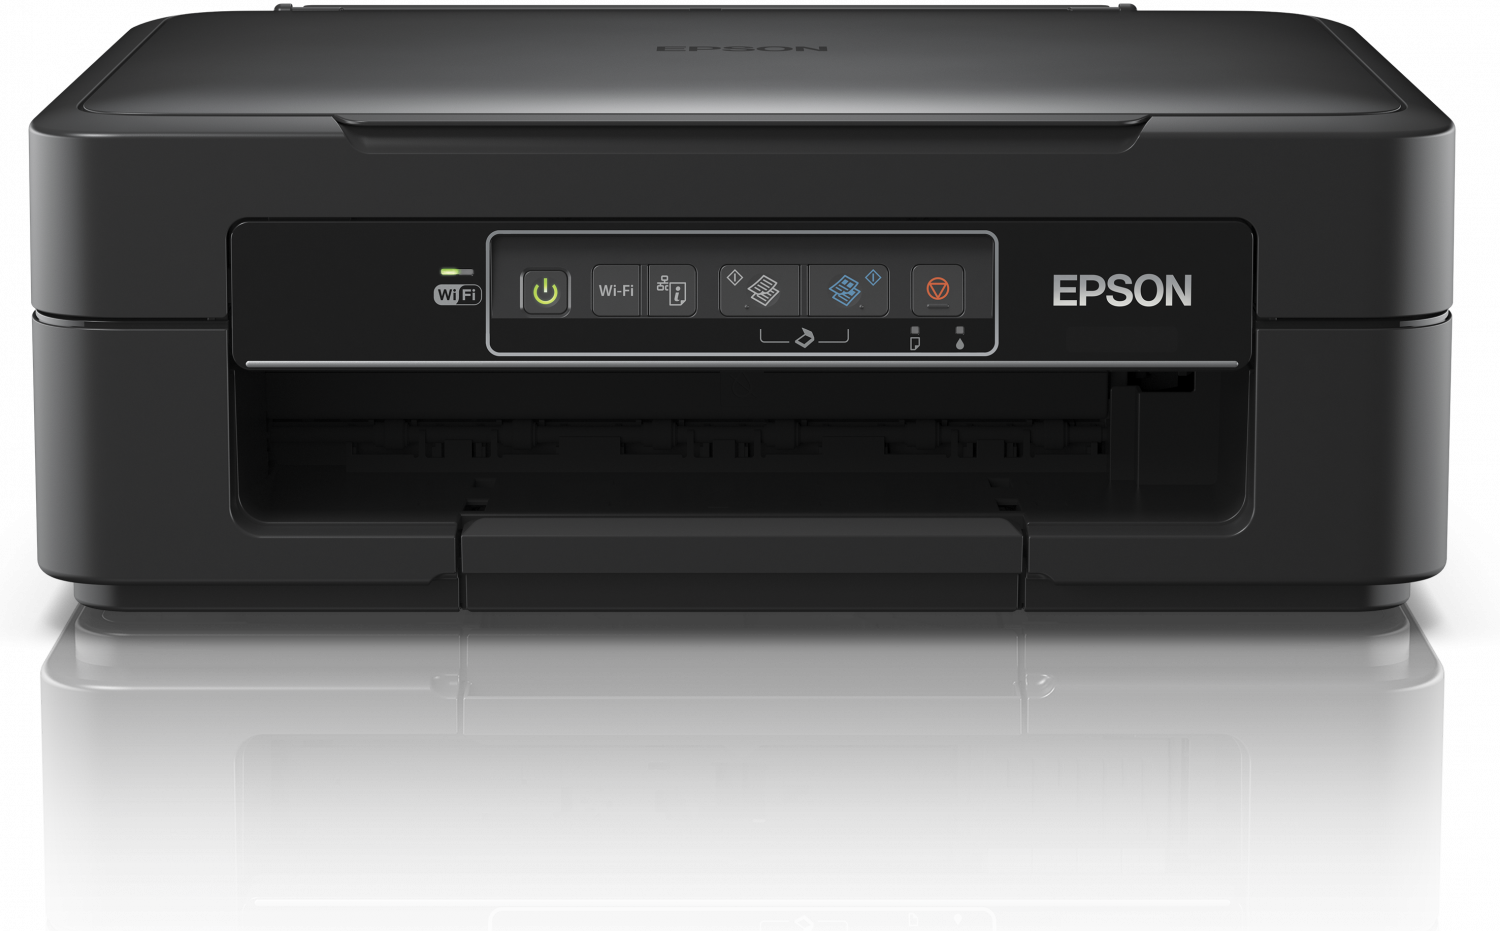 Compañero Depender de capacidad Epson XP-245, la multifunción doméstica para impresión móvil